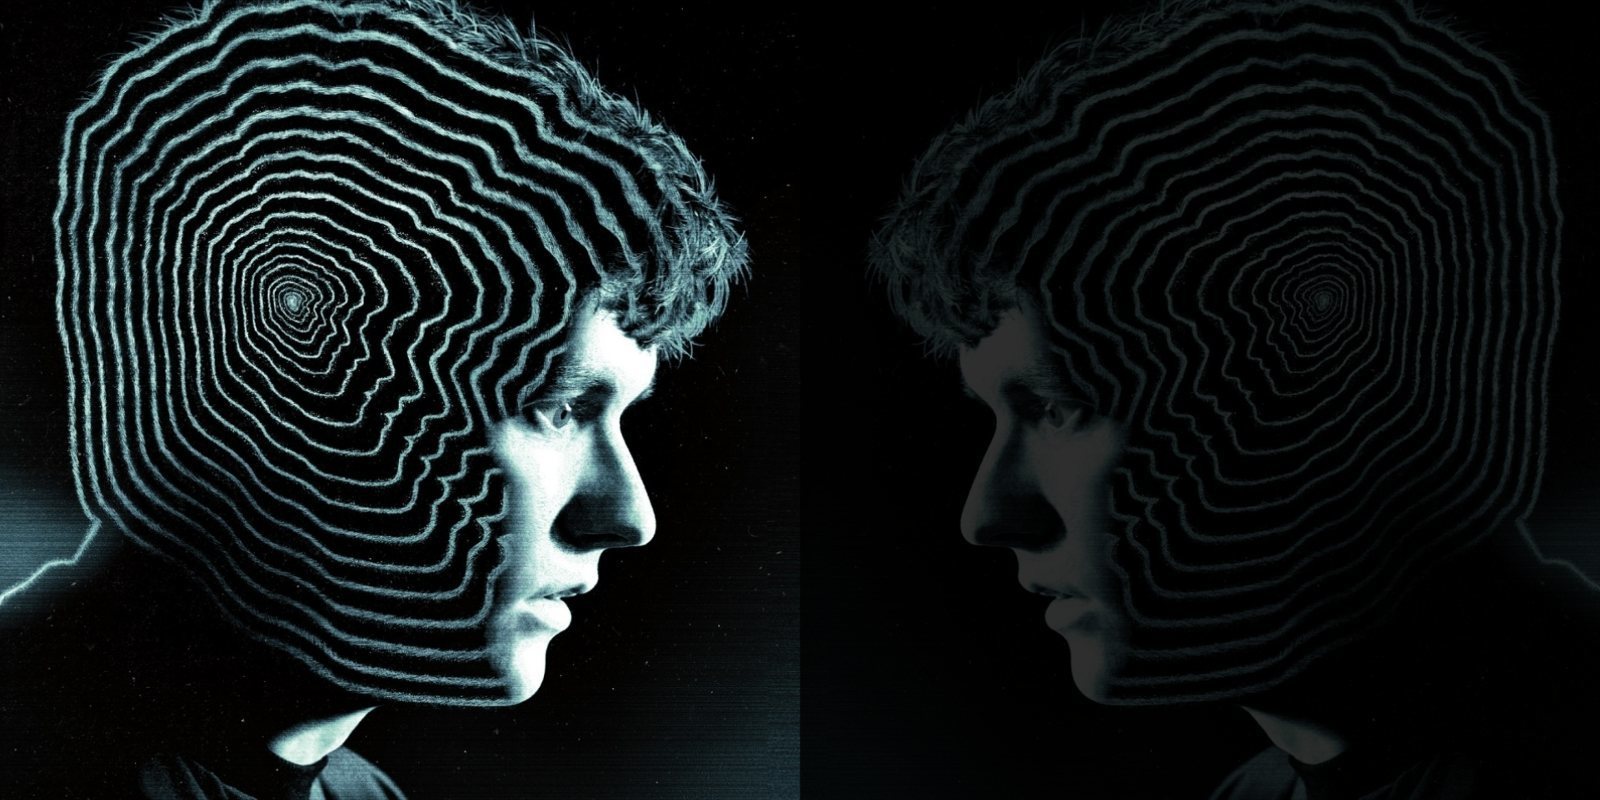 'Black Mirror' podrían contar con más episodios interactivos, según sus creadores